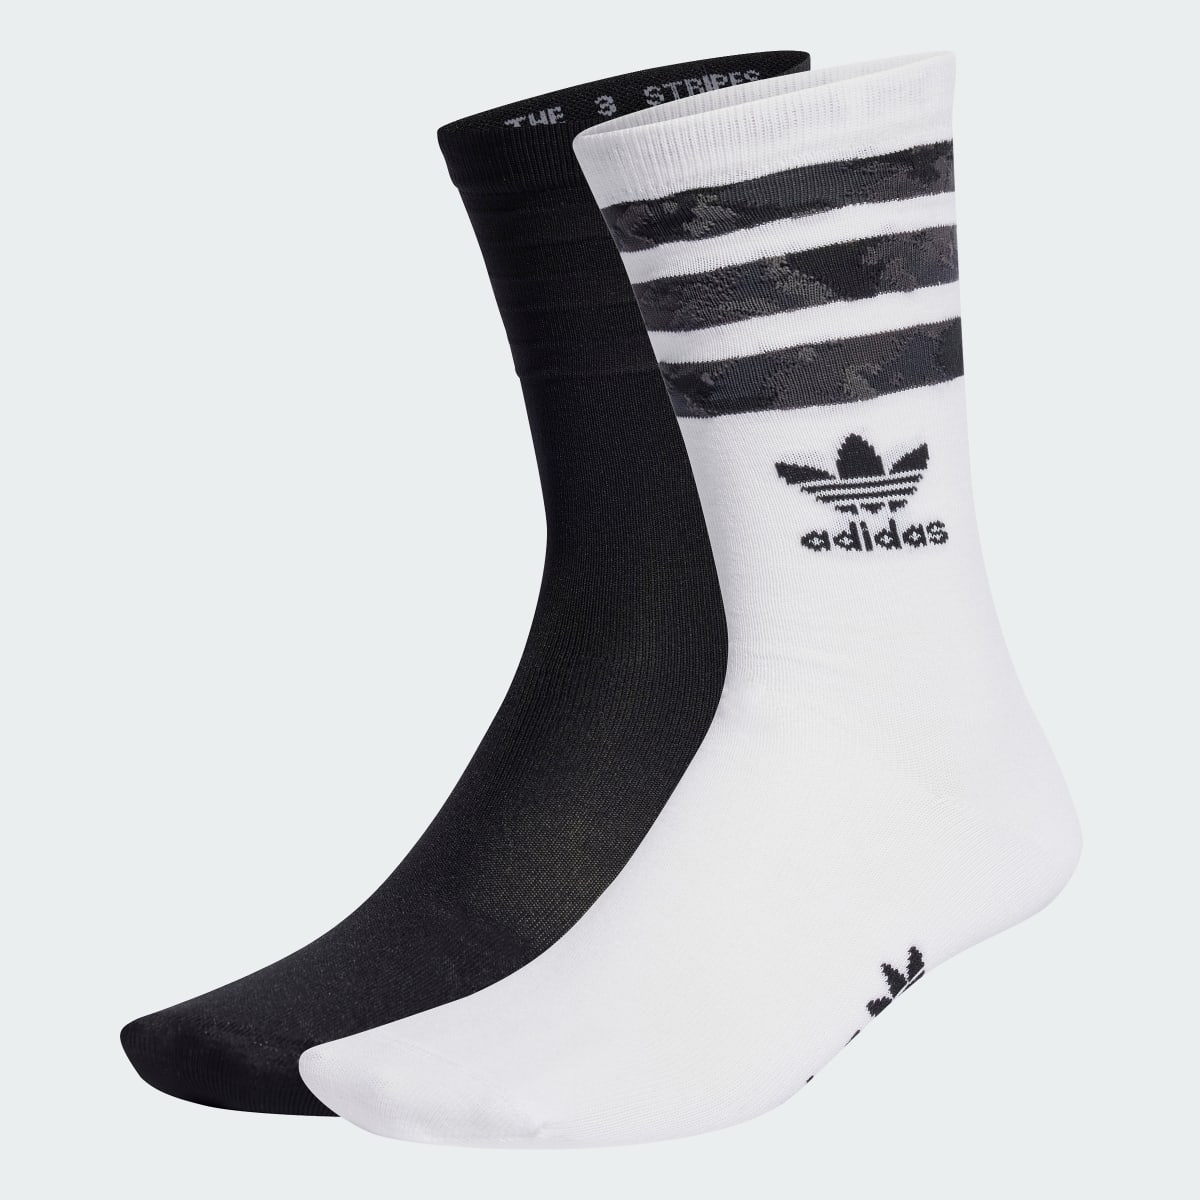 Adidas Camo Crew Socks 2 Pairs. 2